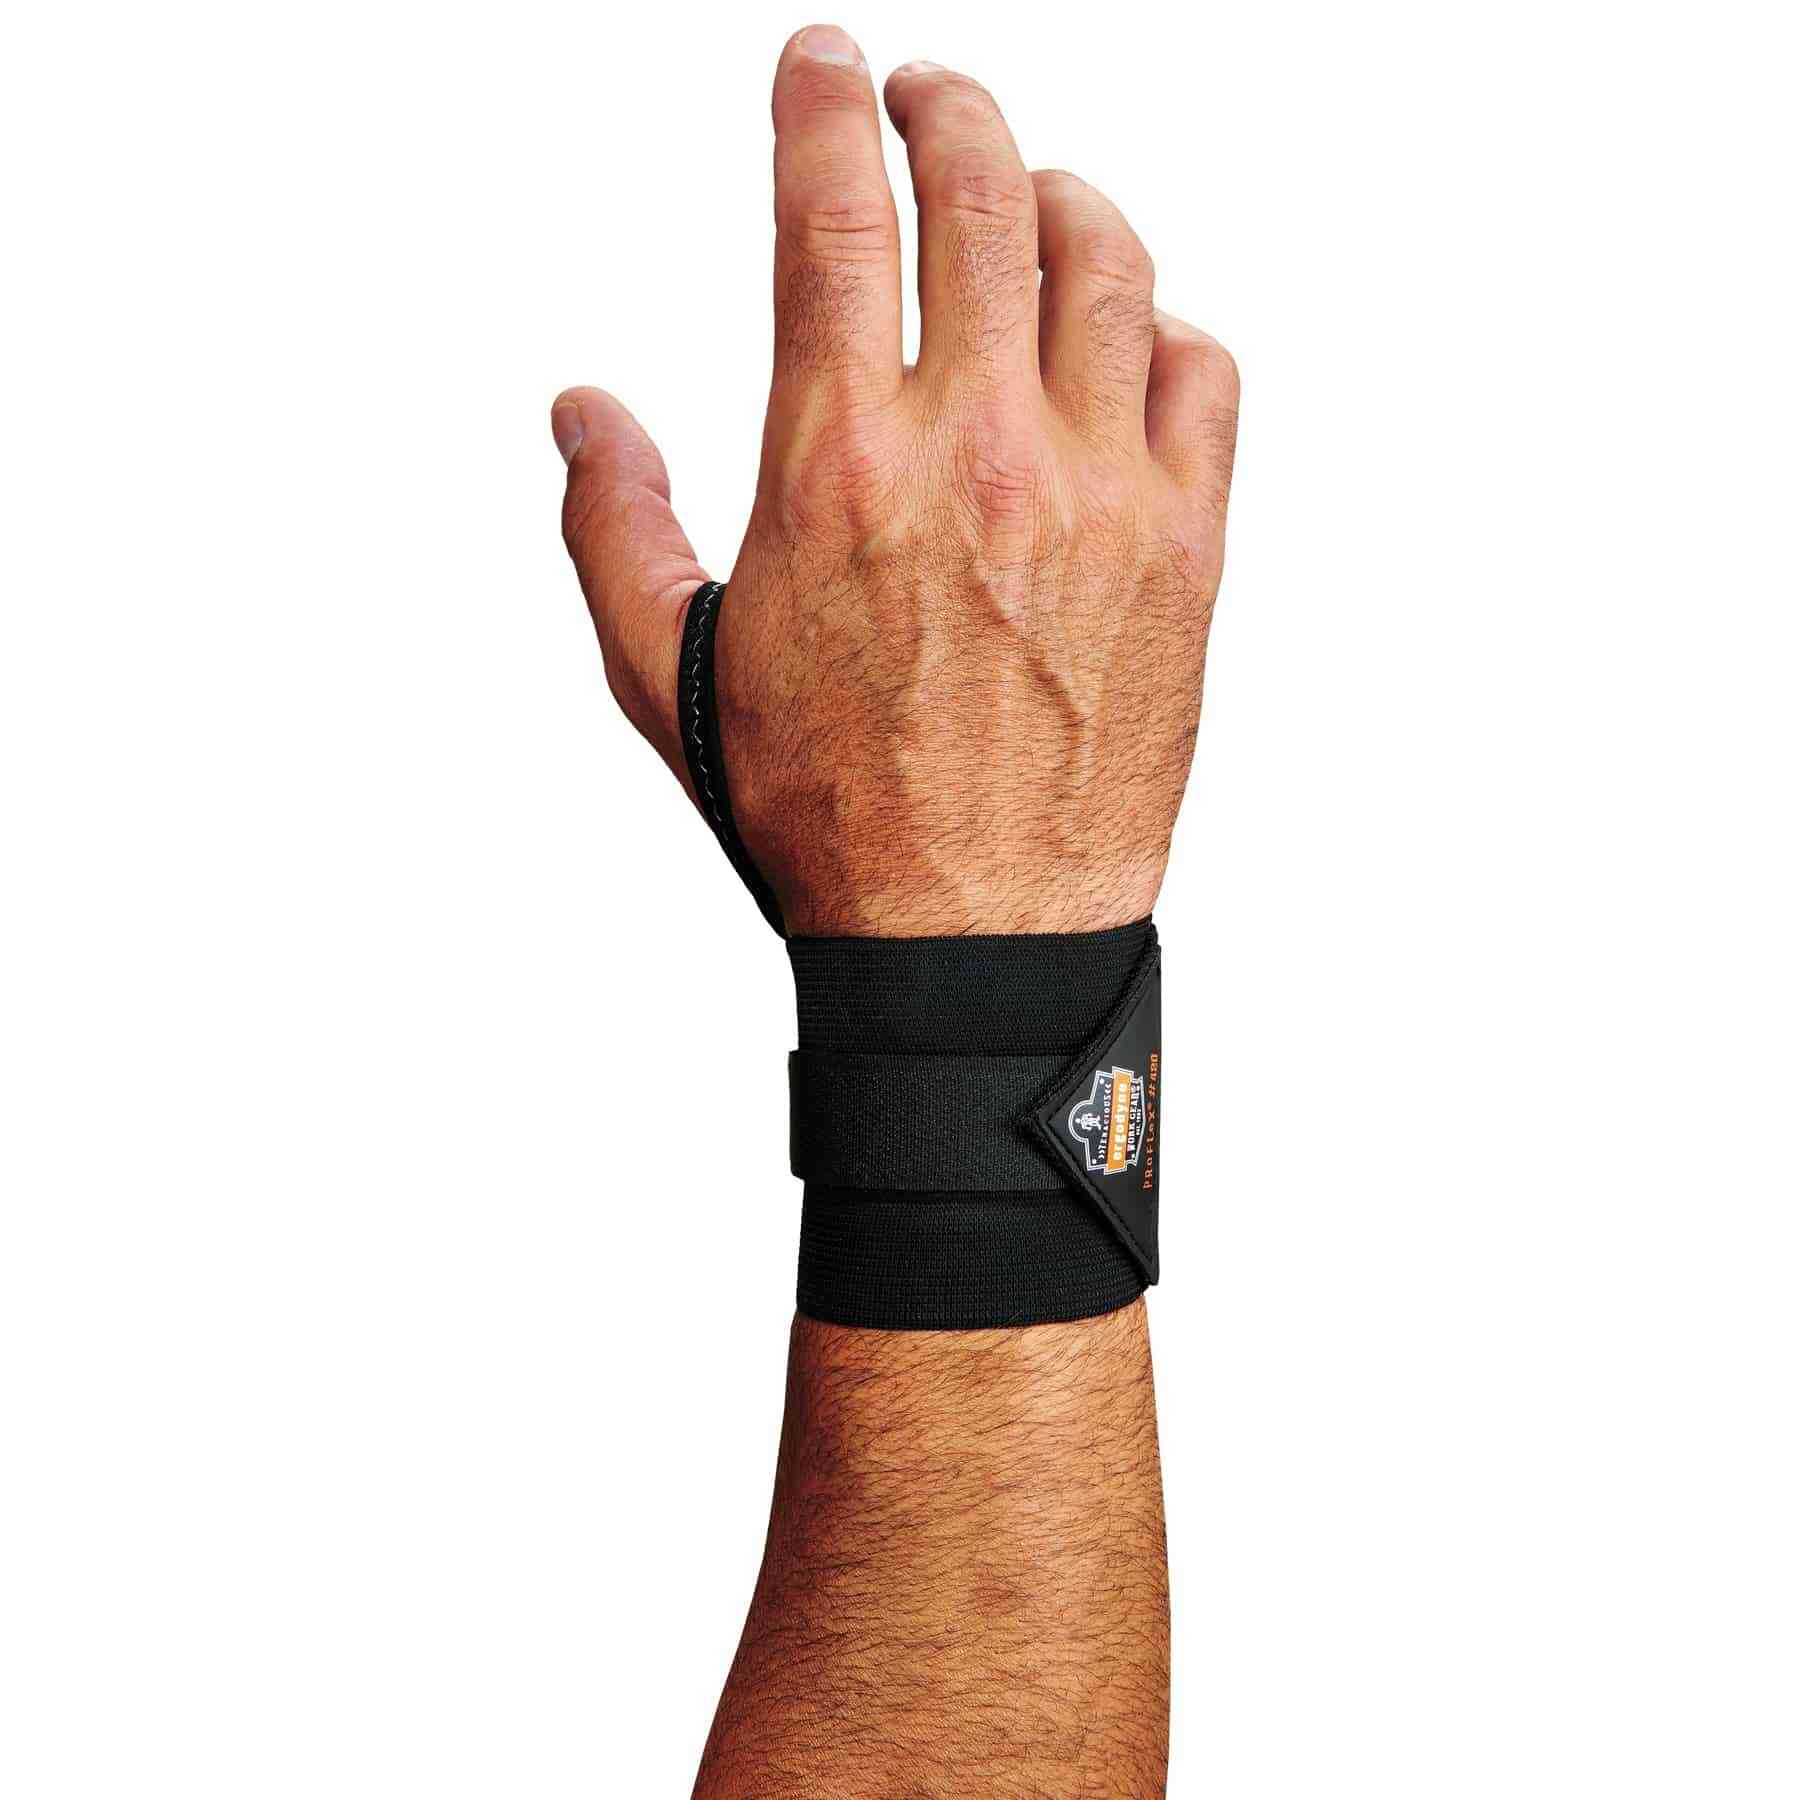 Universal Ambidextrous Wrist Support